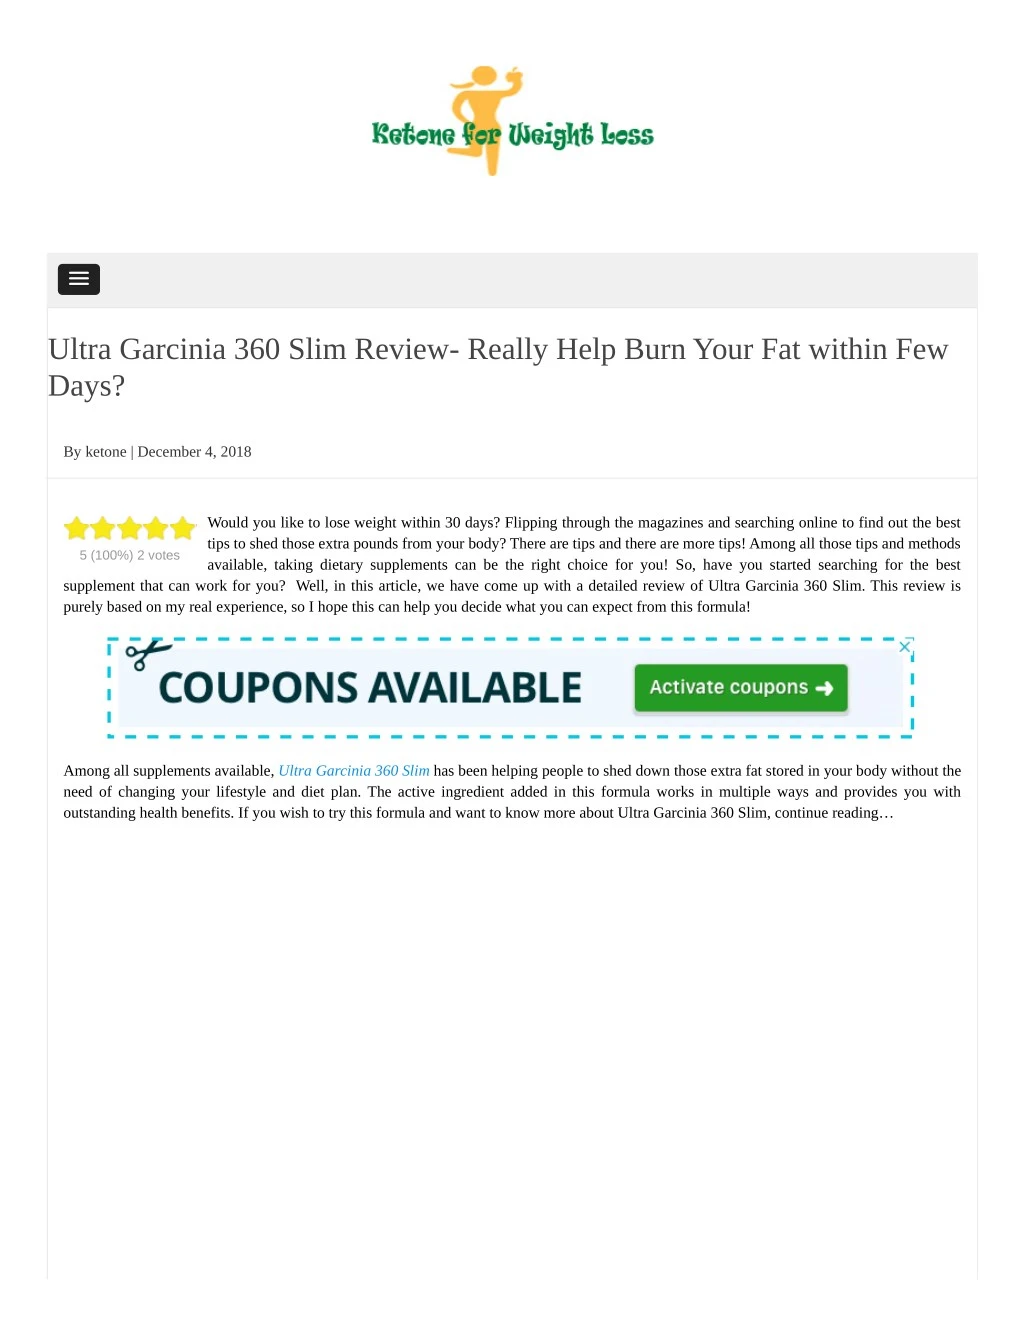 ultra garcinia 360 slim review really help burn